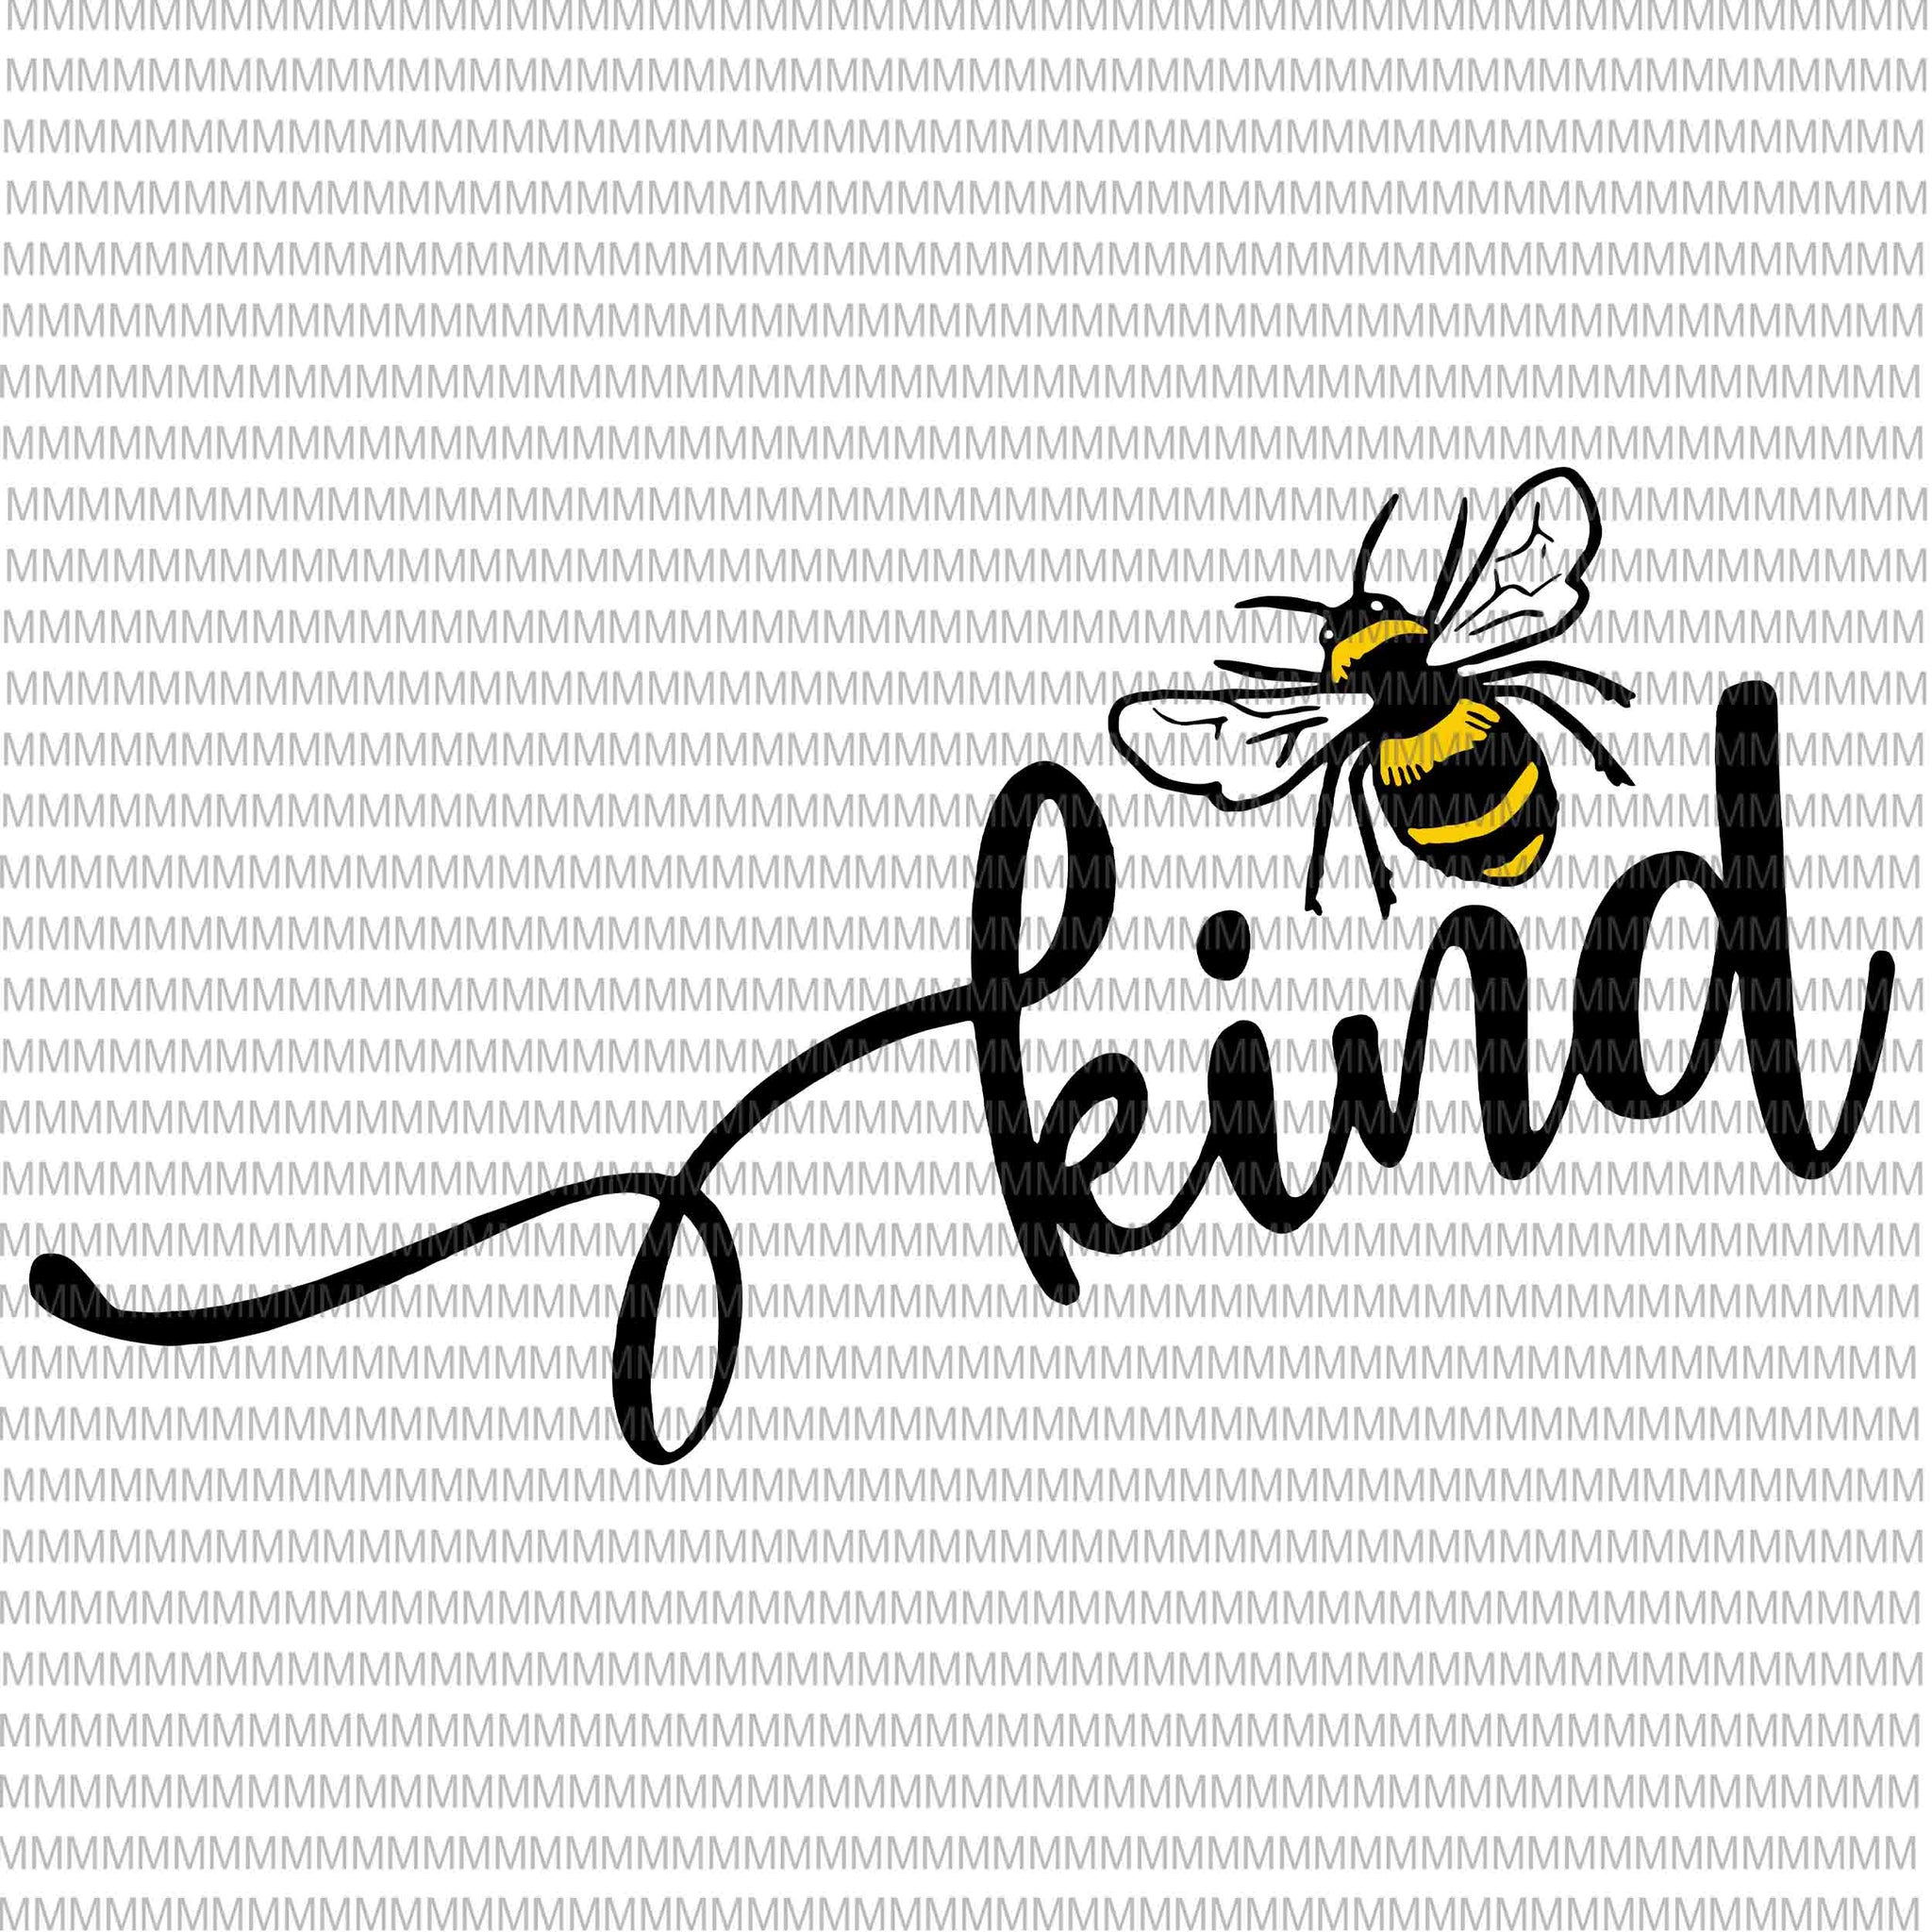 Bee kind svg, Be kind svg, Kindness svg, Bumblebee clipart, Bee kind vector, be kind vector